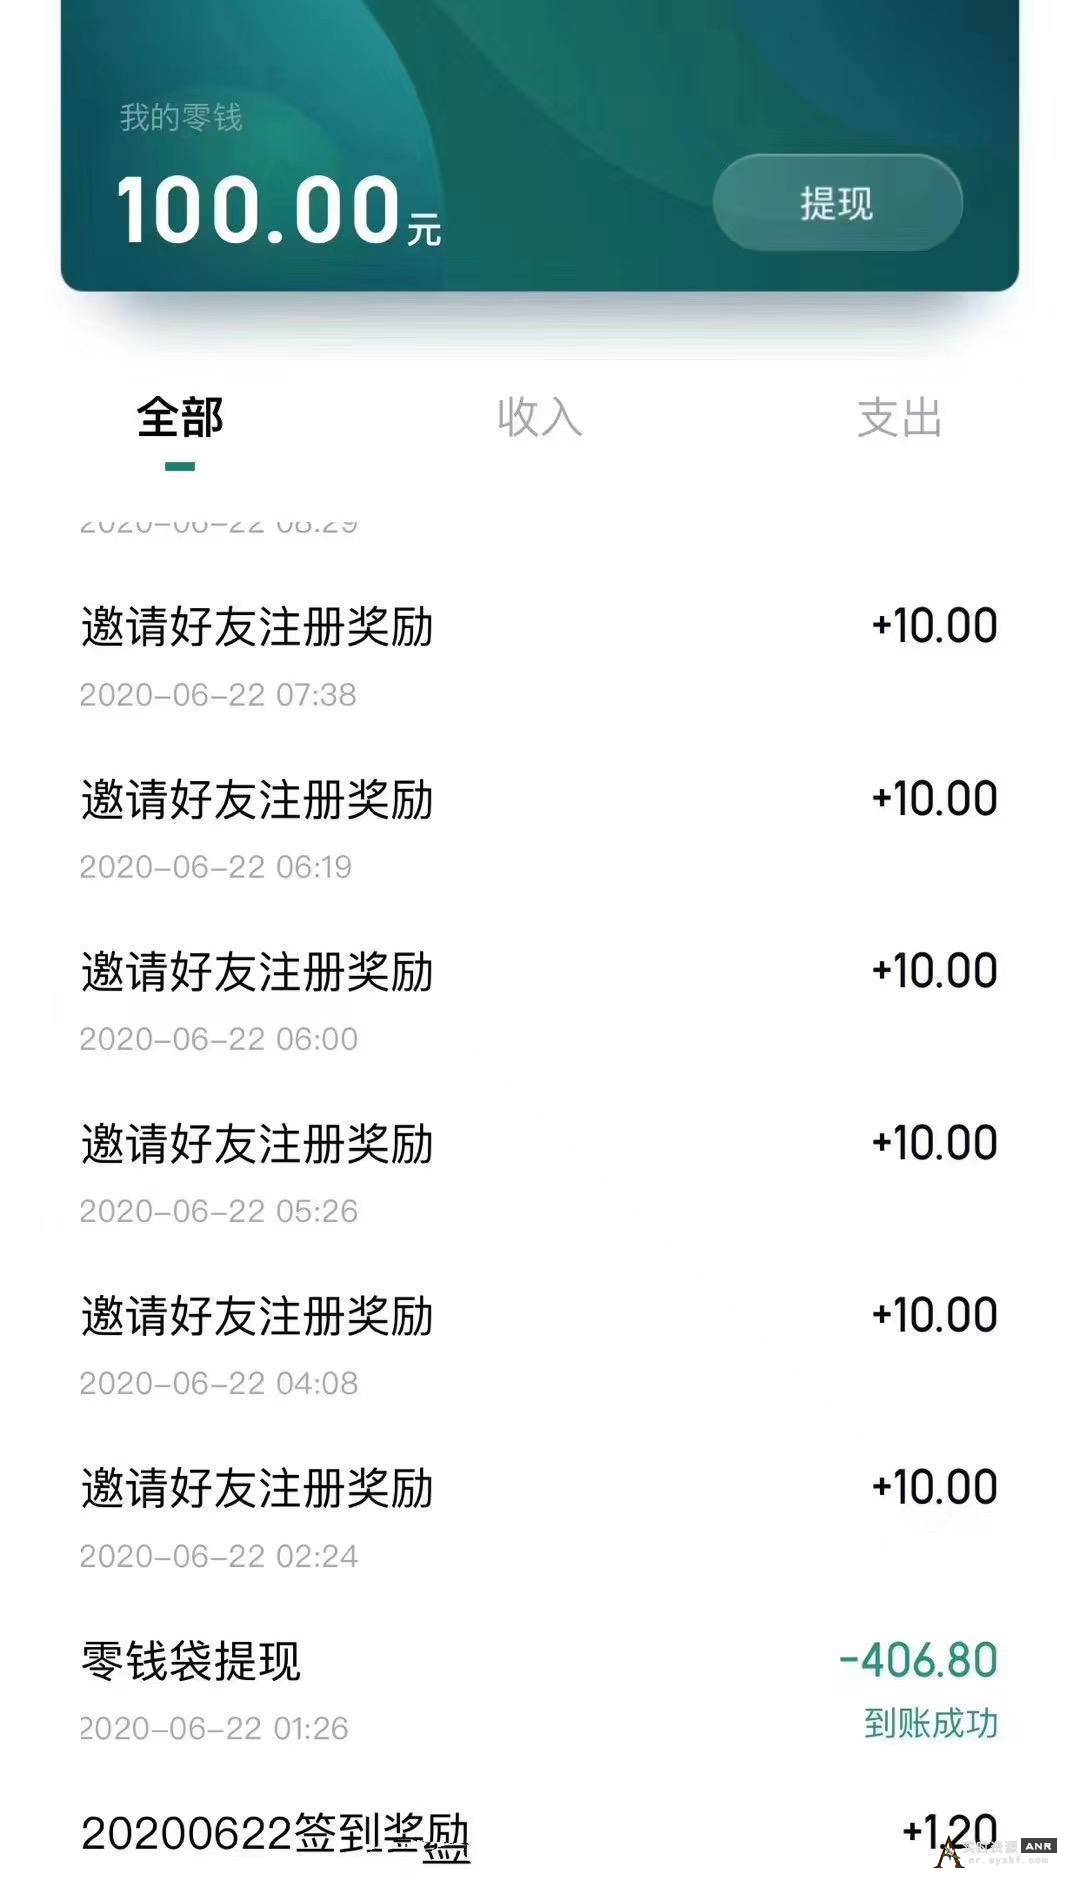 京东旗下正规app 安装注册秒提5元红包 网络资源 图1张